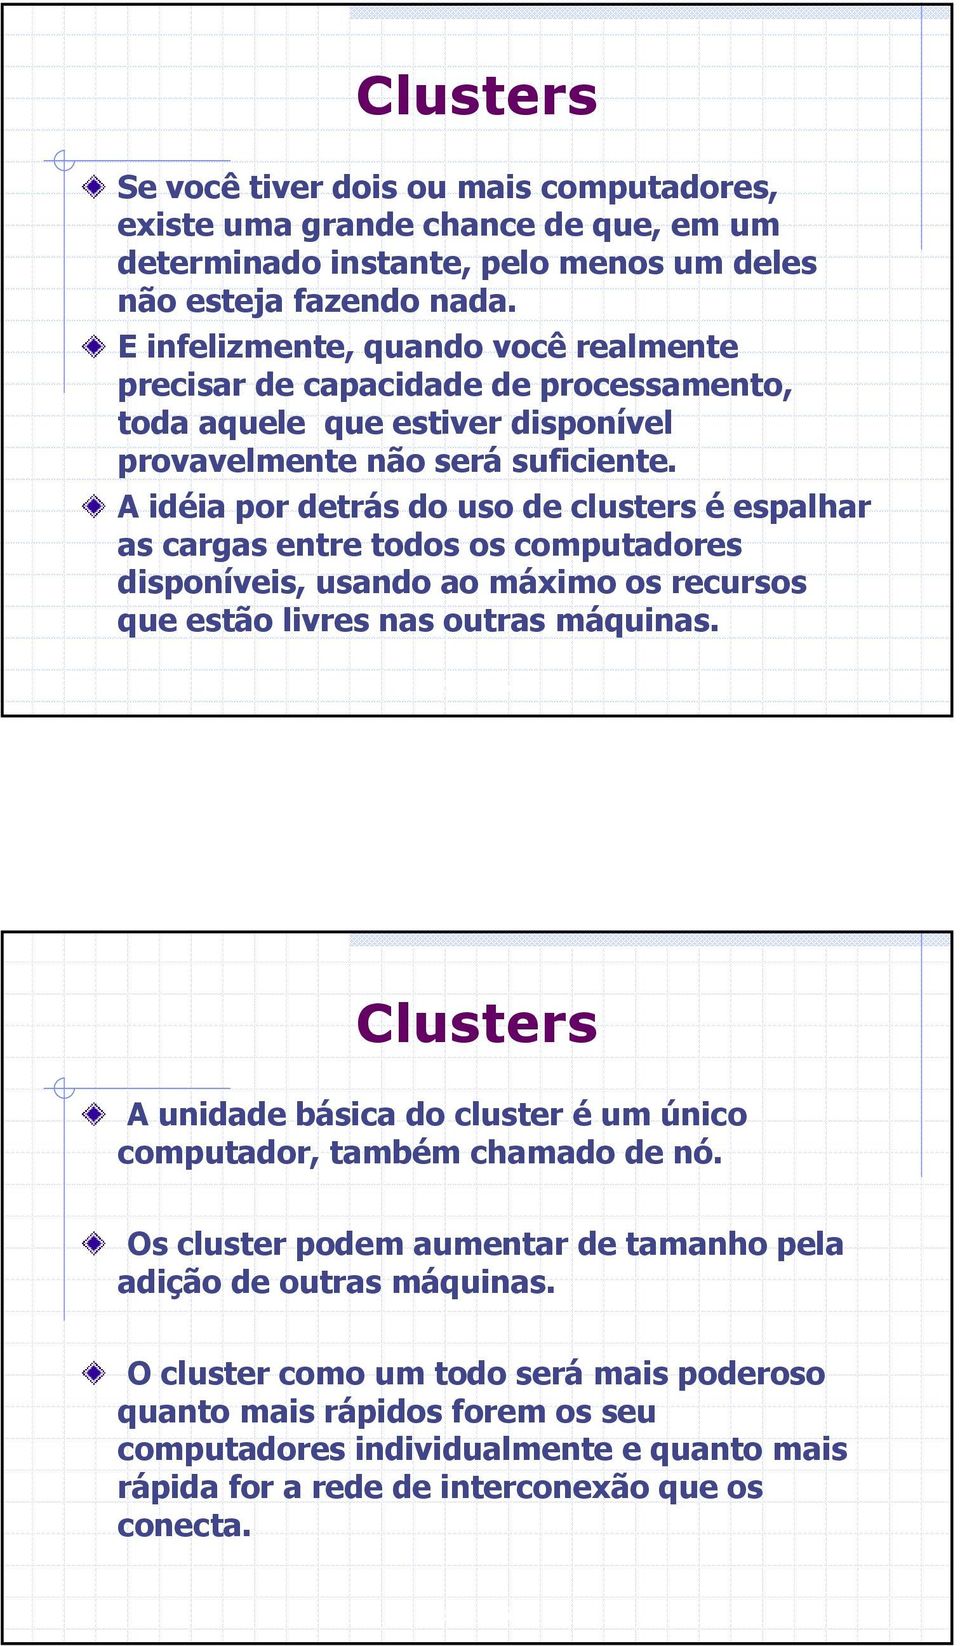 A idéia por detrás do uso de clusters é espalhar as cargas entre todos os computadores disponíveis, usando ao máximo os recursos que estão livres nas outras máquinas.